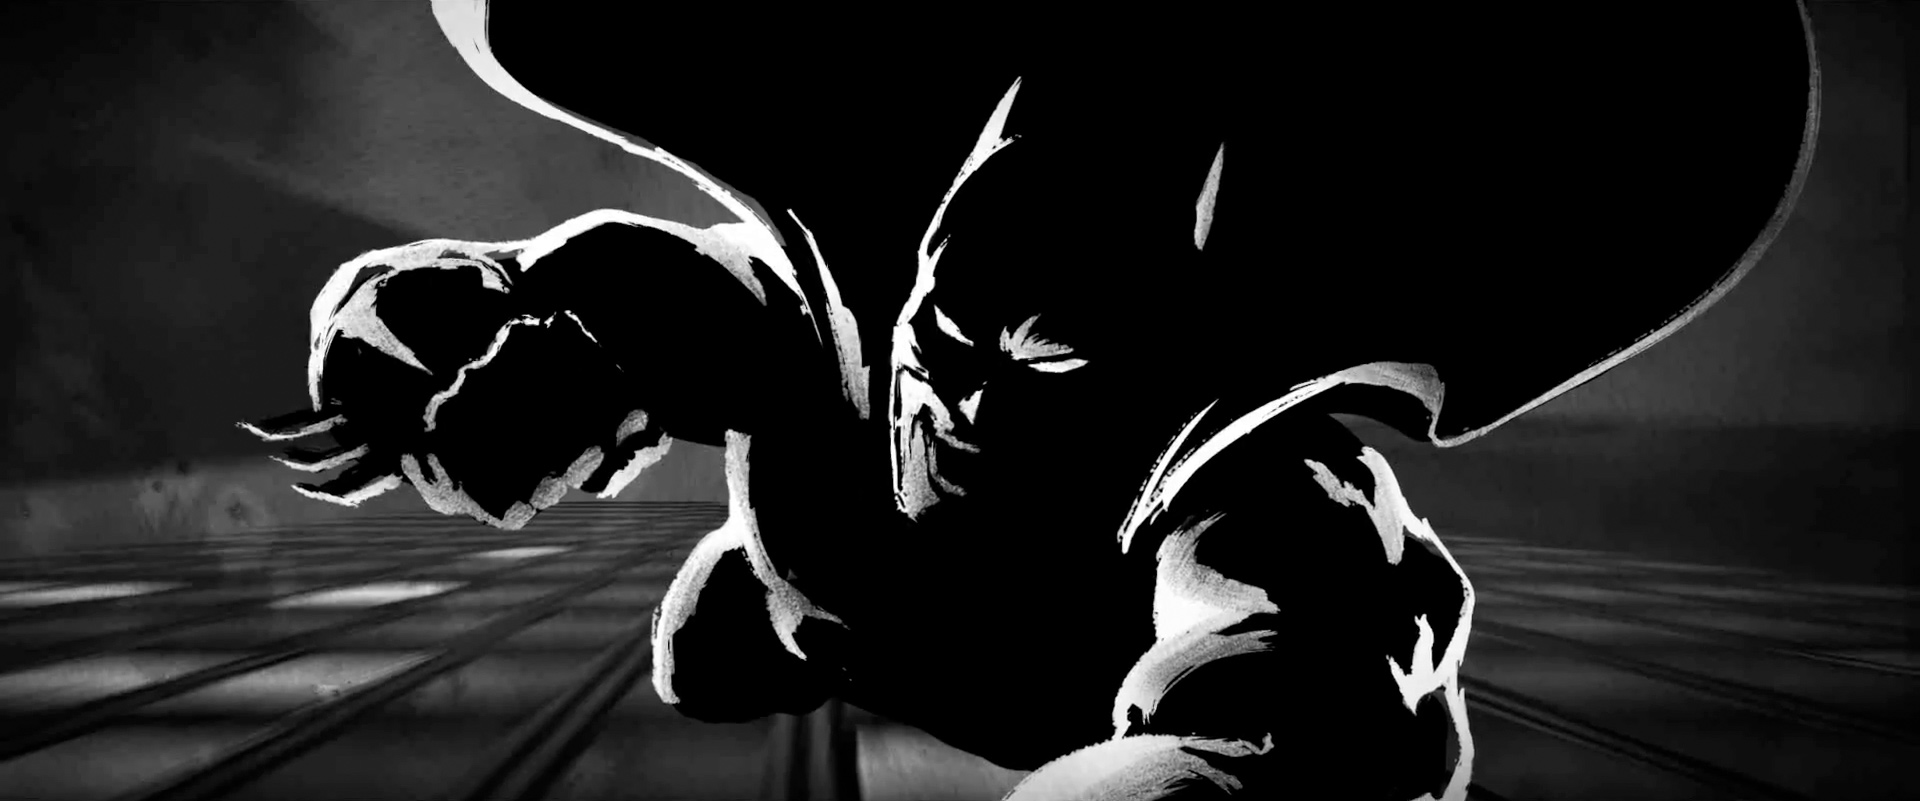 stunning-batman-animatic-short-a-gotham-fairytale-47.jpg